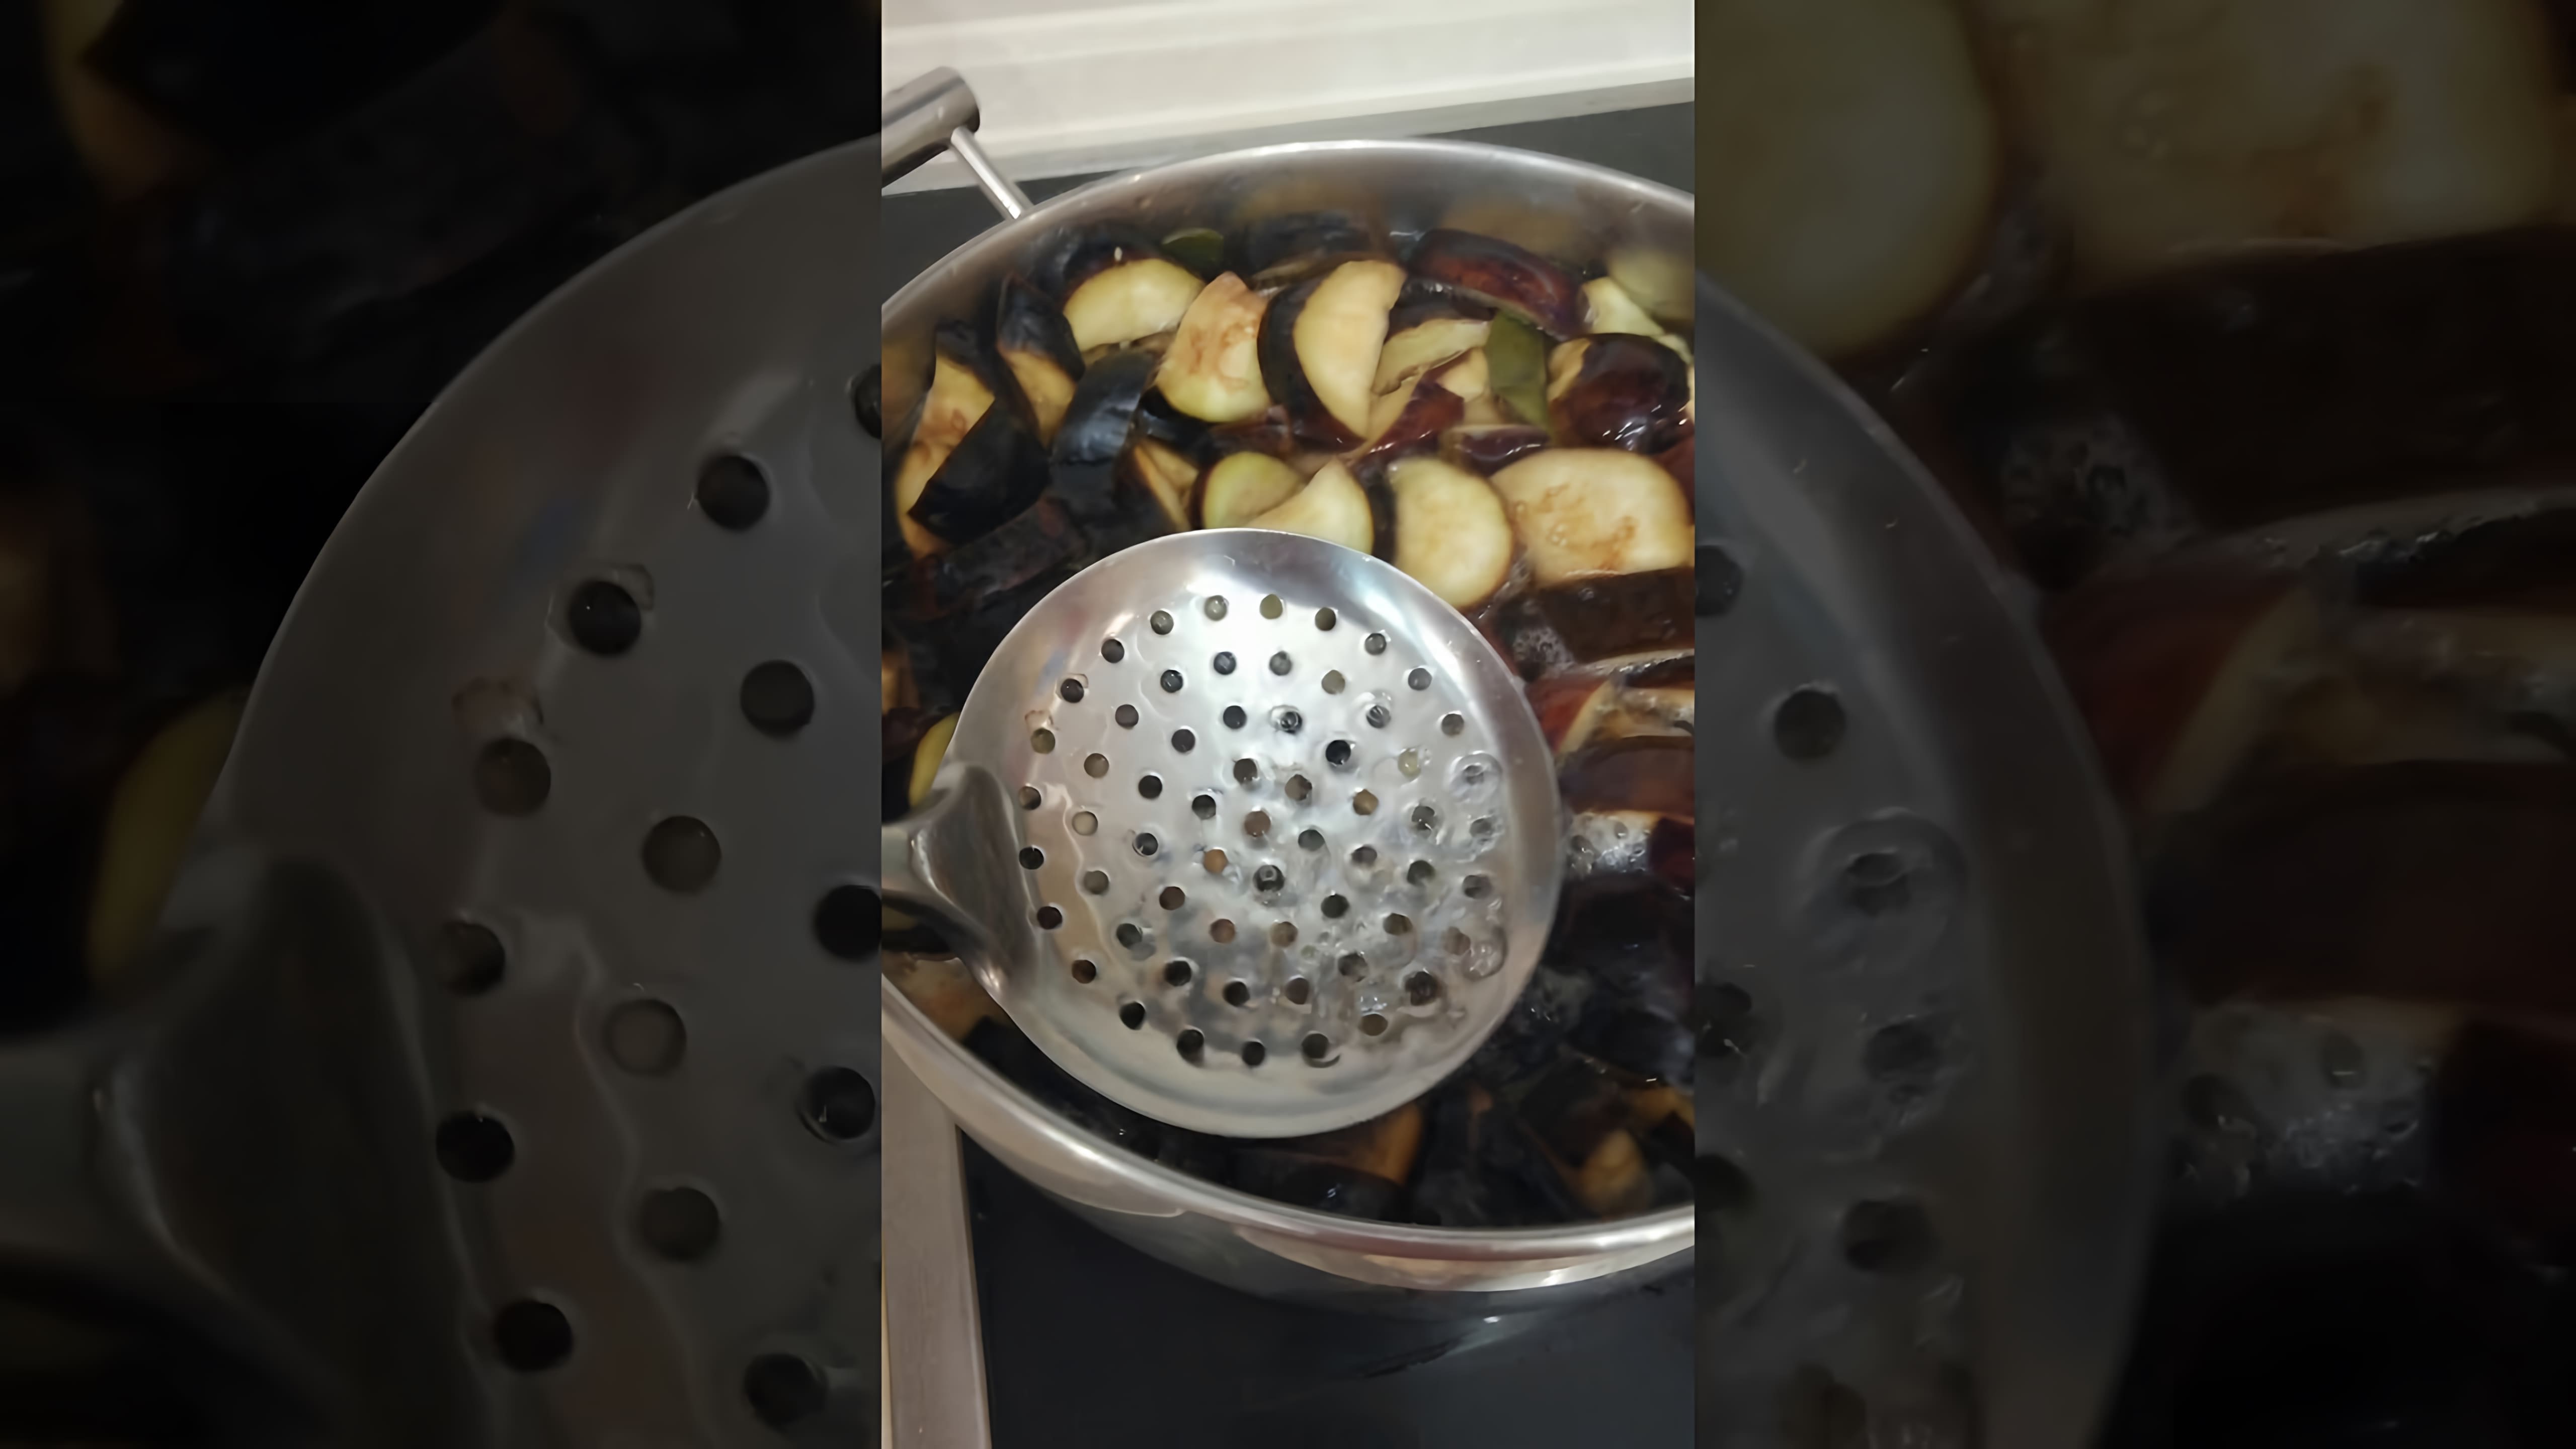 В этом видео демонстрируется процесс приготовления закуски из баклажанов, которая напоминает грибы